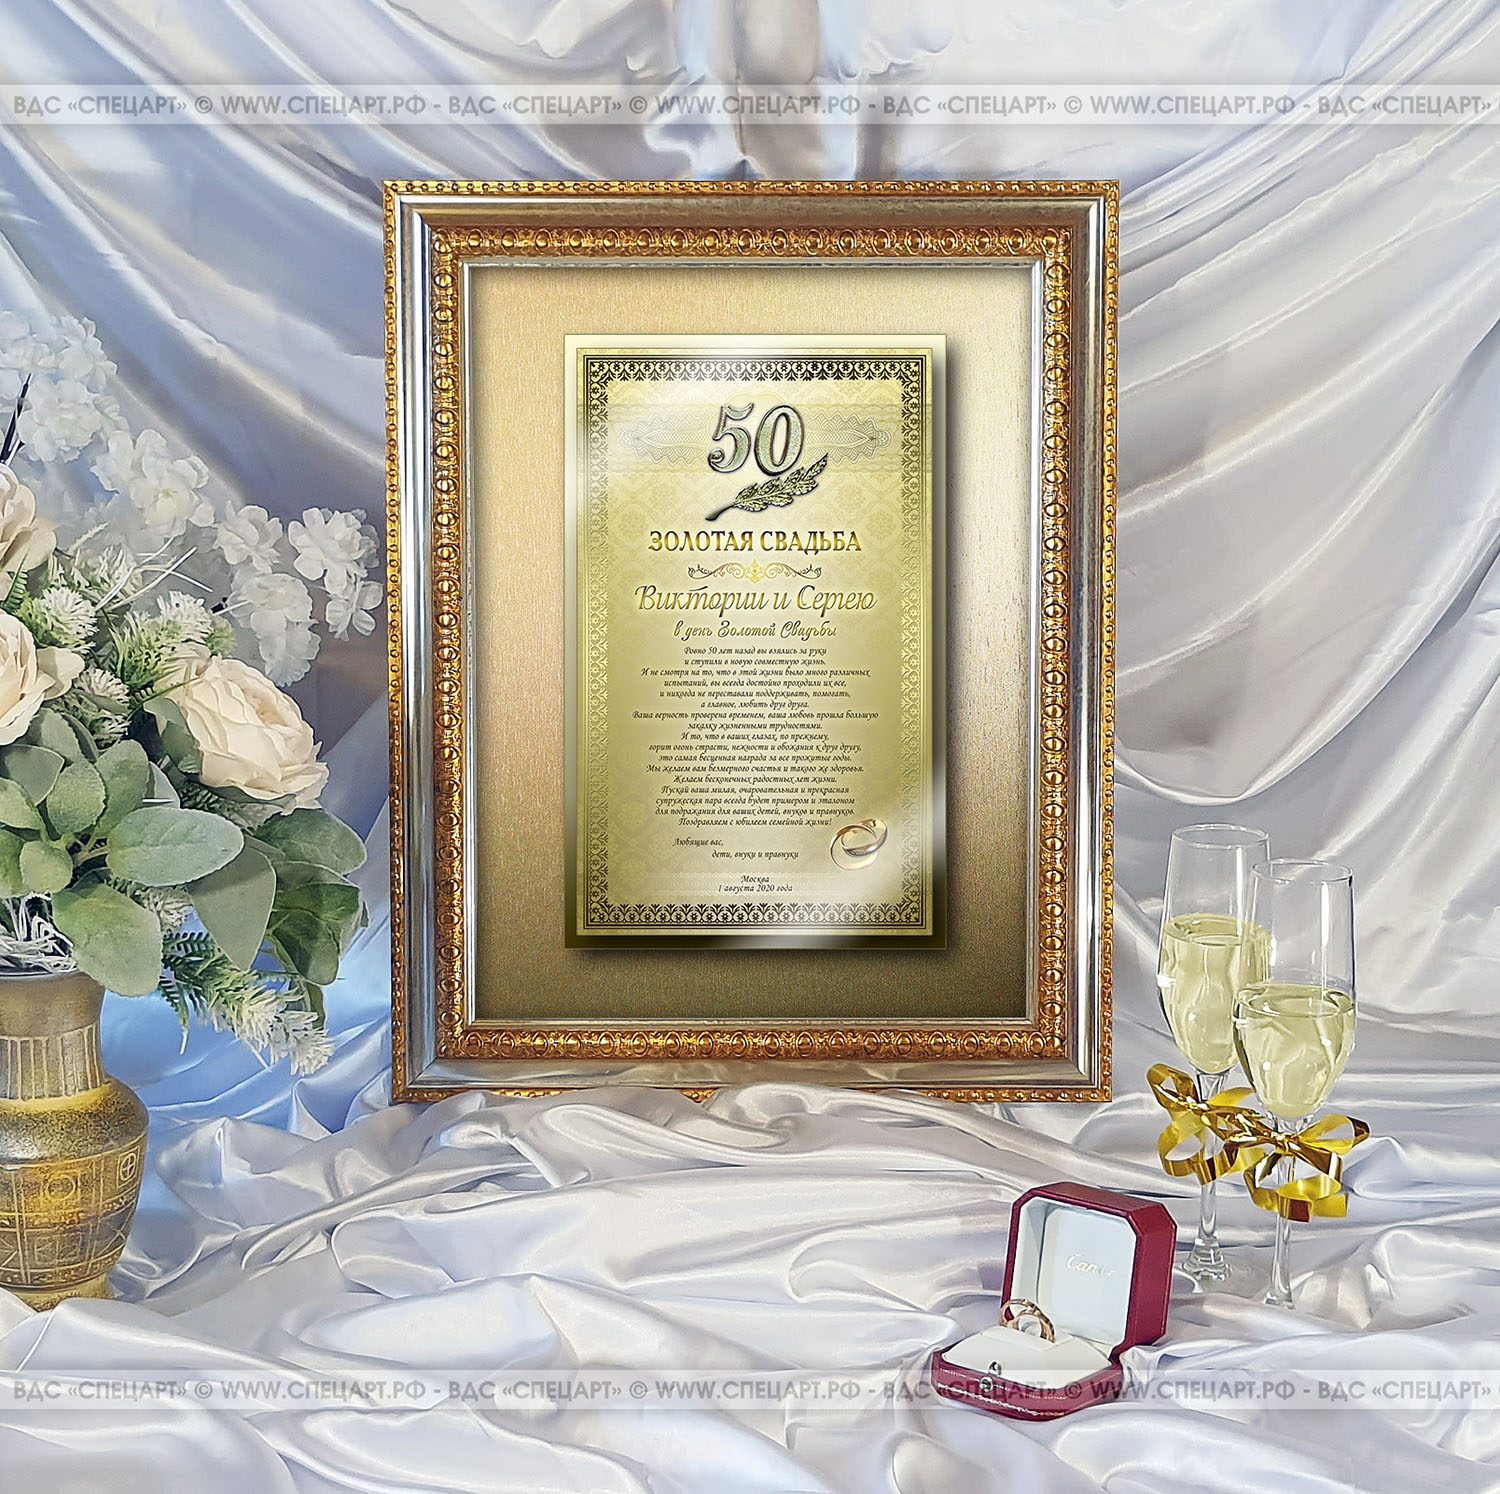 Представительское поздравление на годовщину свадьбы (золотая свадьба) на металлической табличке с цветной печатью, фон из металлизированной бумаги и позолоченными вставками на стекле и табличке в багете ...